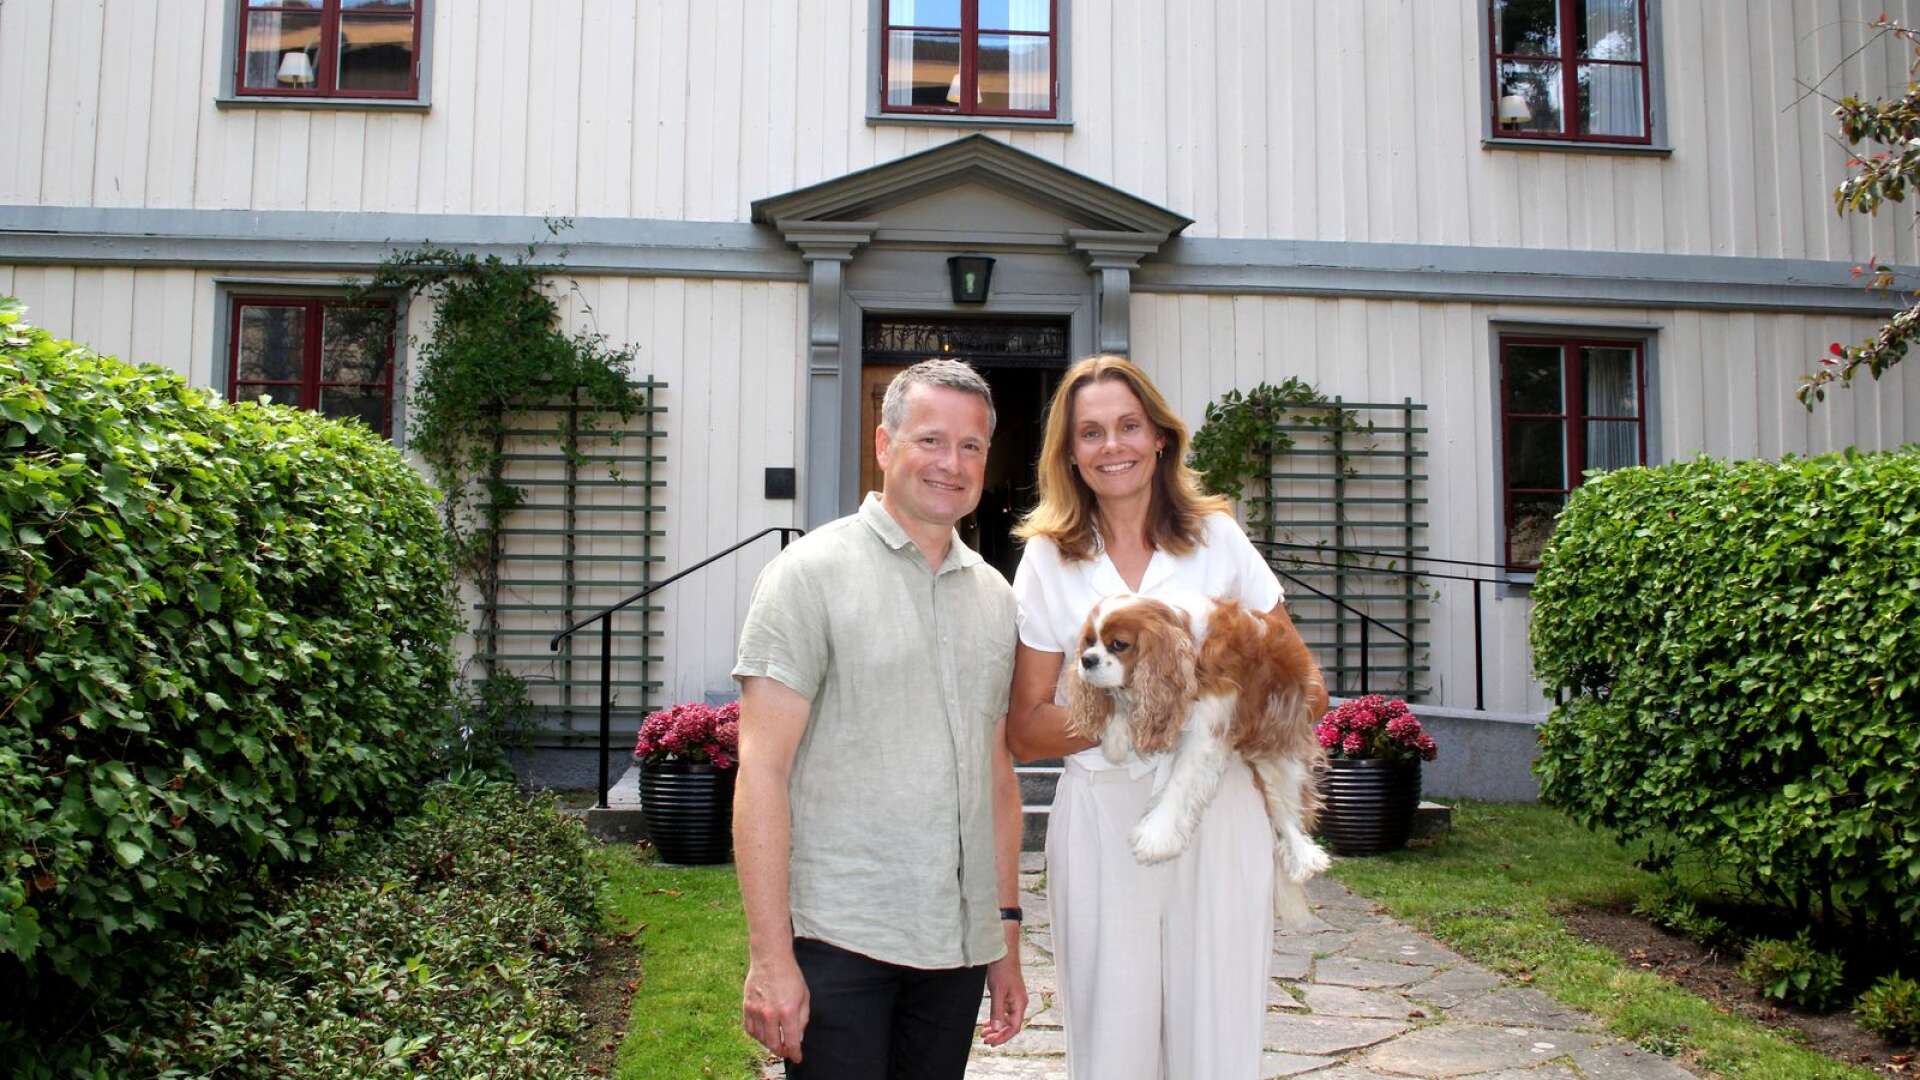 Sören och Veronica Dalevi fick en flytt till ny bostad på kuppen, när Sören fick jobbet som biskop i Karlstad stift. Det tog ett tag att bo in sig efter flytten från 70-talsvillan till 1700-talshuset, avslöjar de.